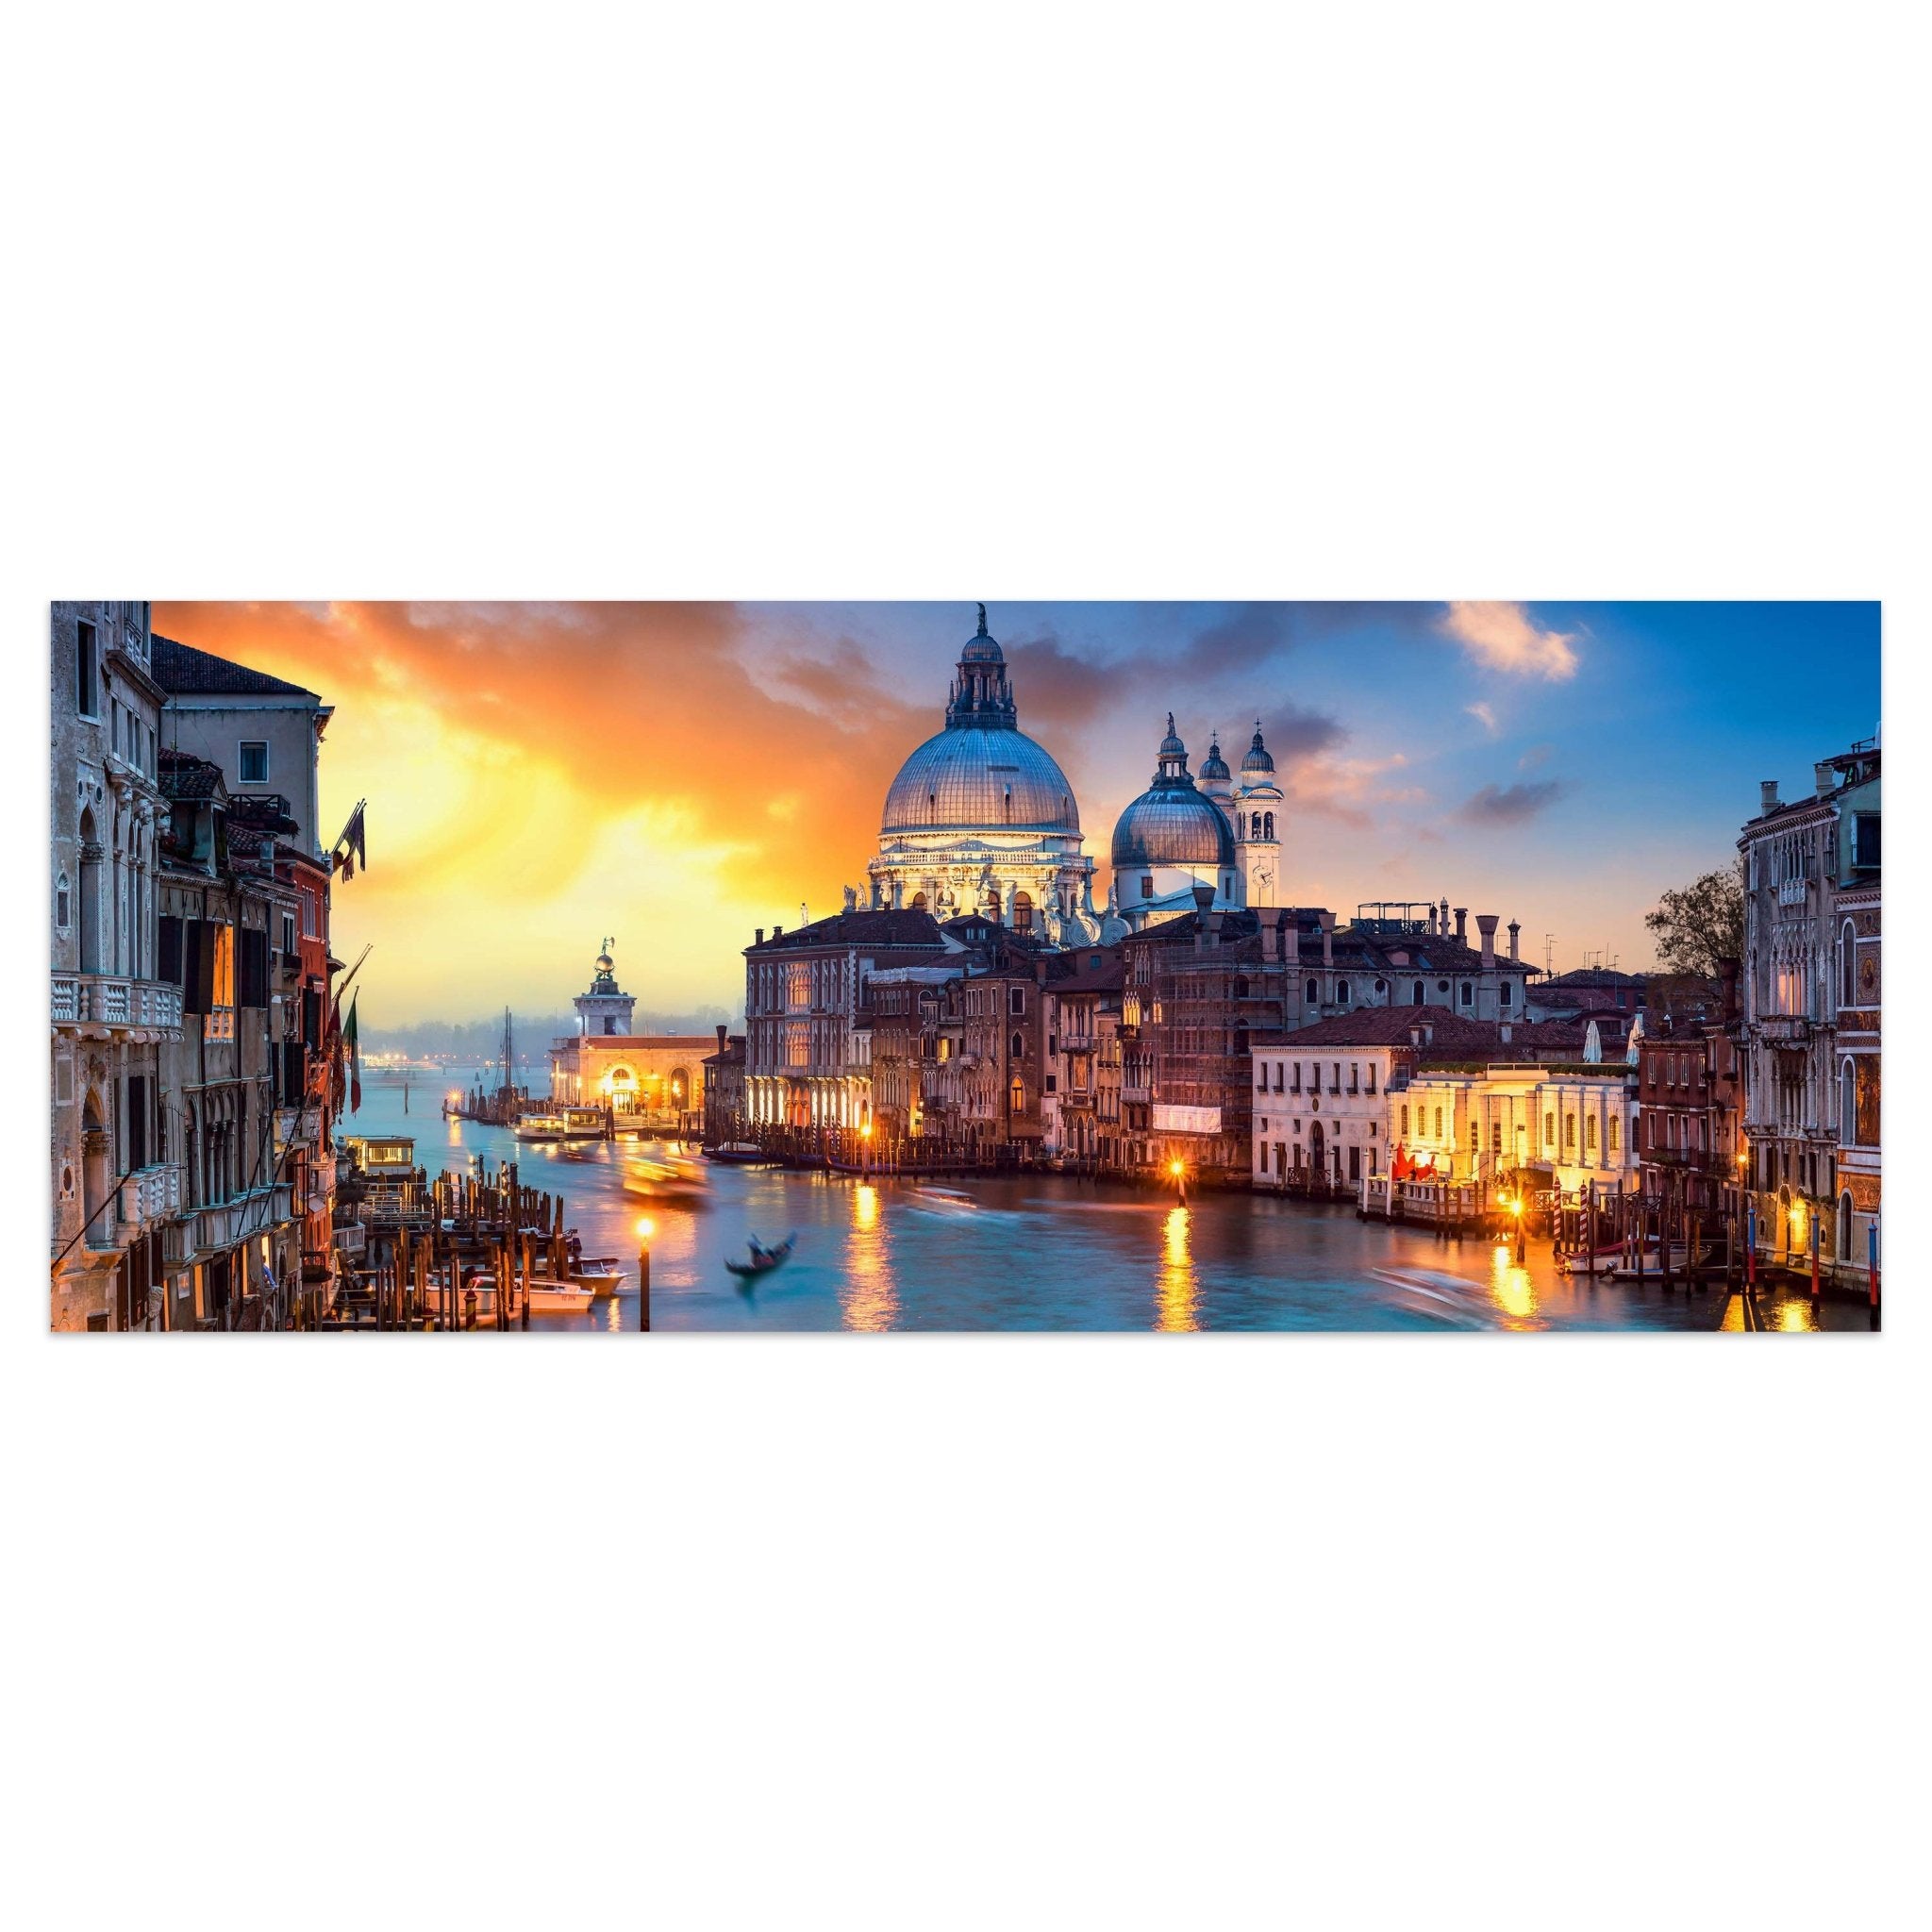 Leinwandbild Venedig am Abend, Meer, Gondel, Kirche M1073 kaufen - Bild 1